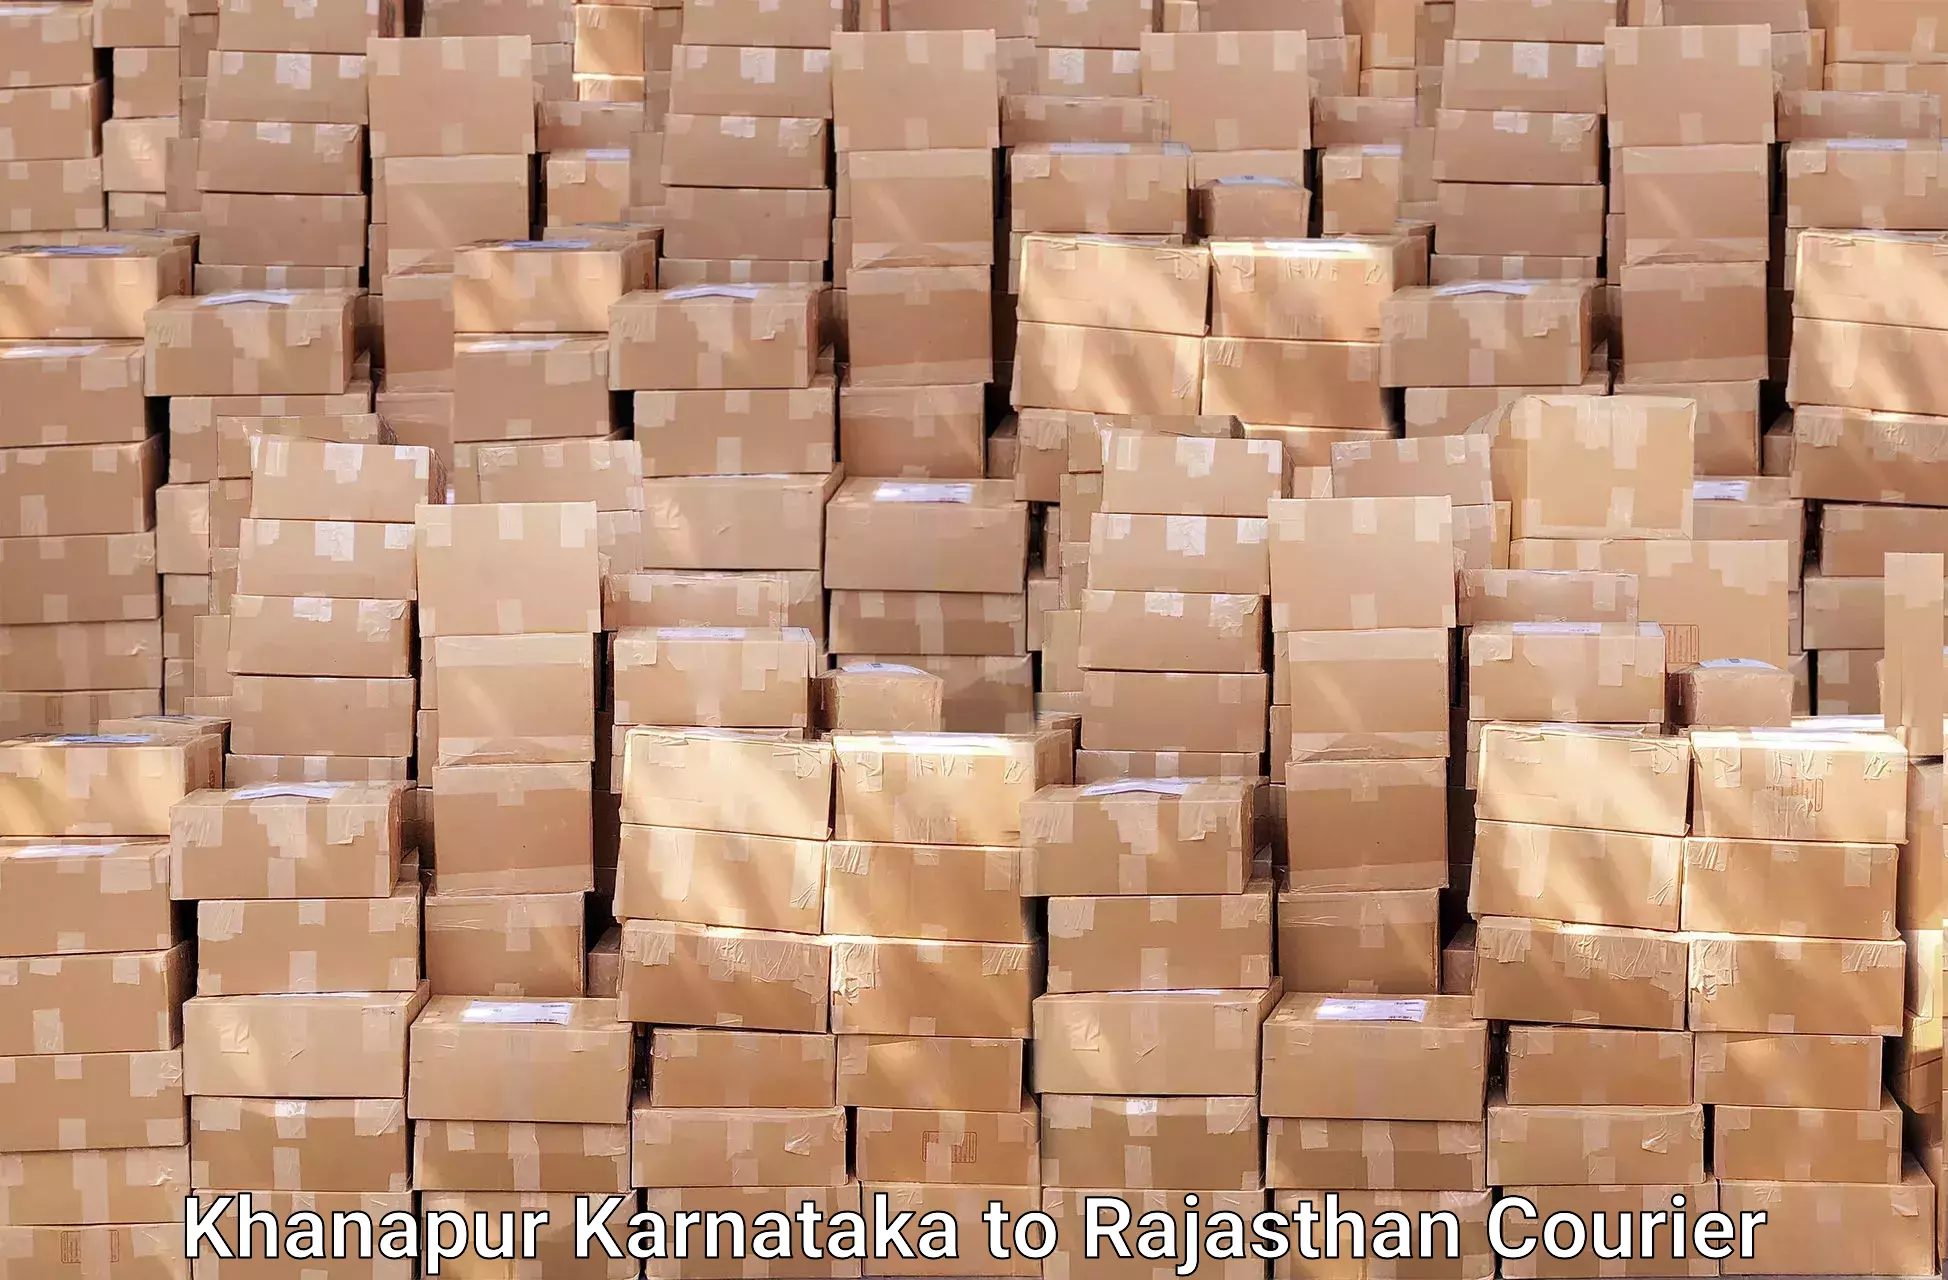 Professional moving strategies Khanapur Karnataka to Nagar